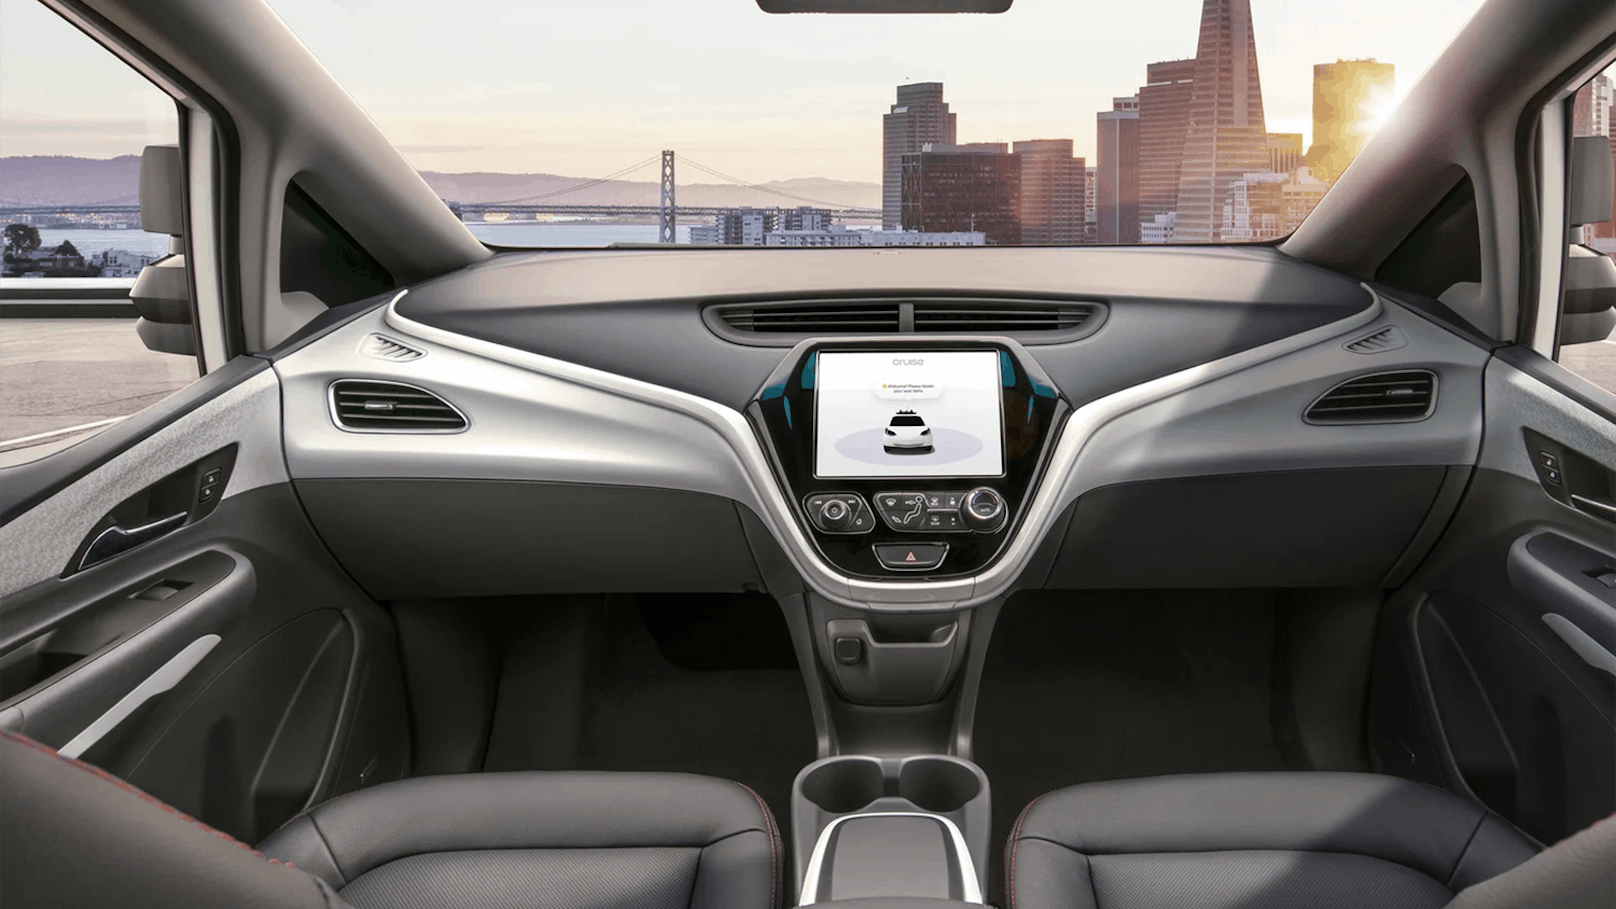 Autohersteller müssen ihre autonomen Autos nicht mehr mit manuellen Bedienelementen ausstatten.